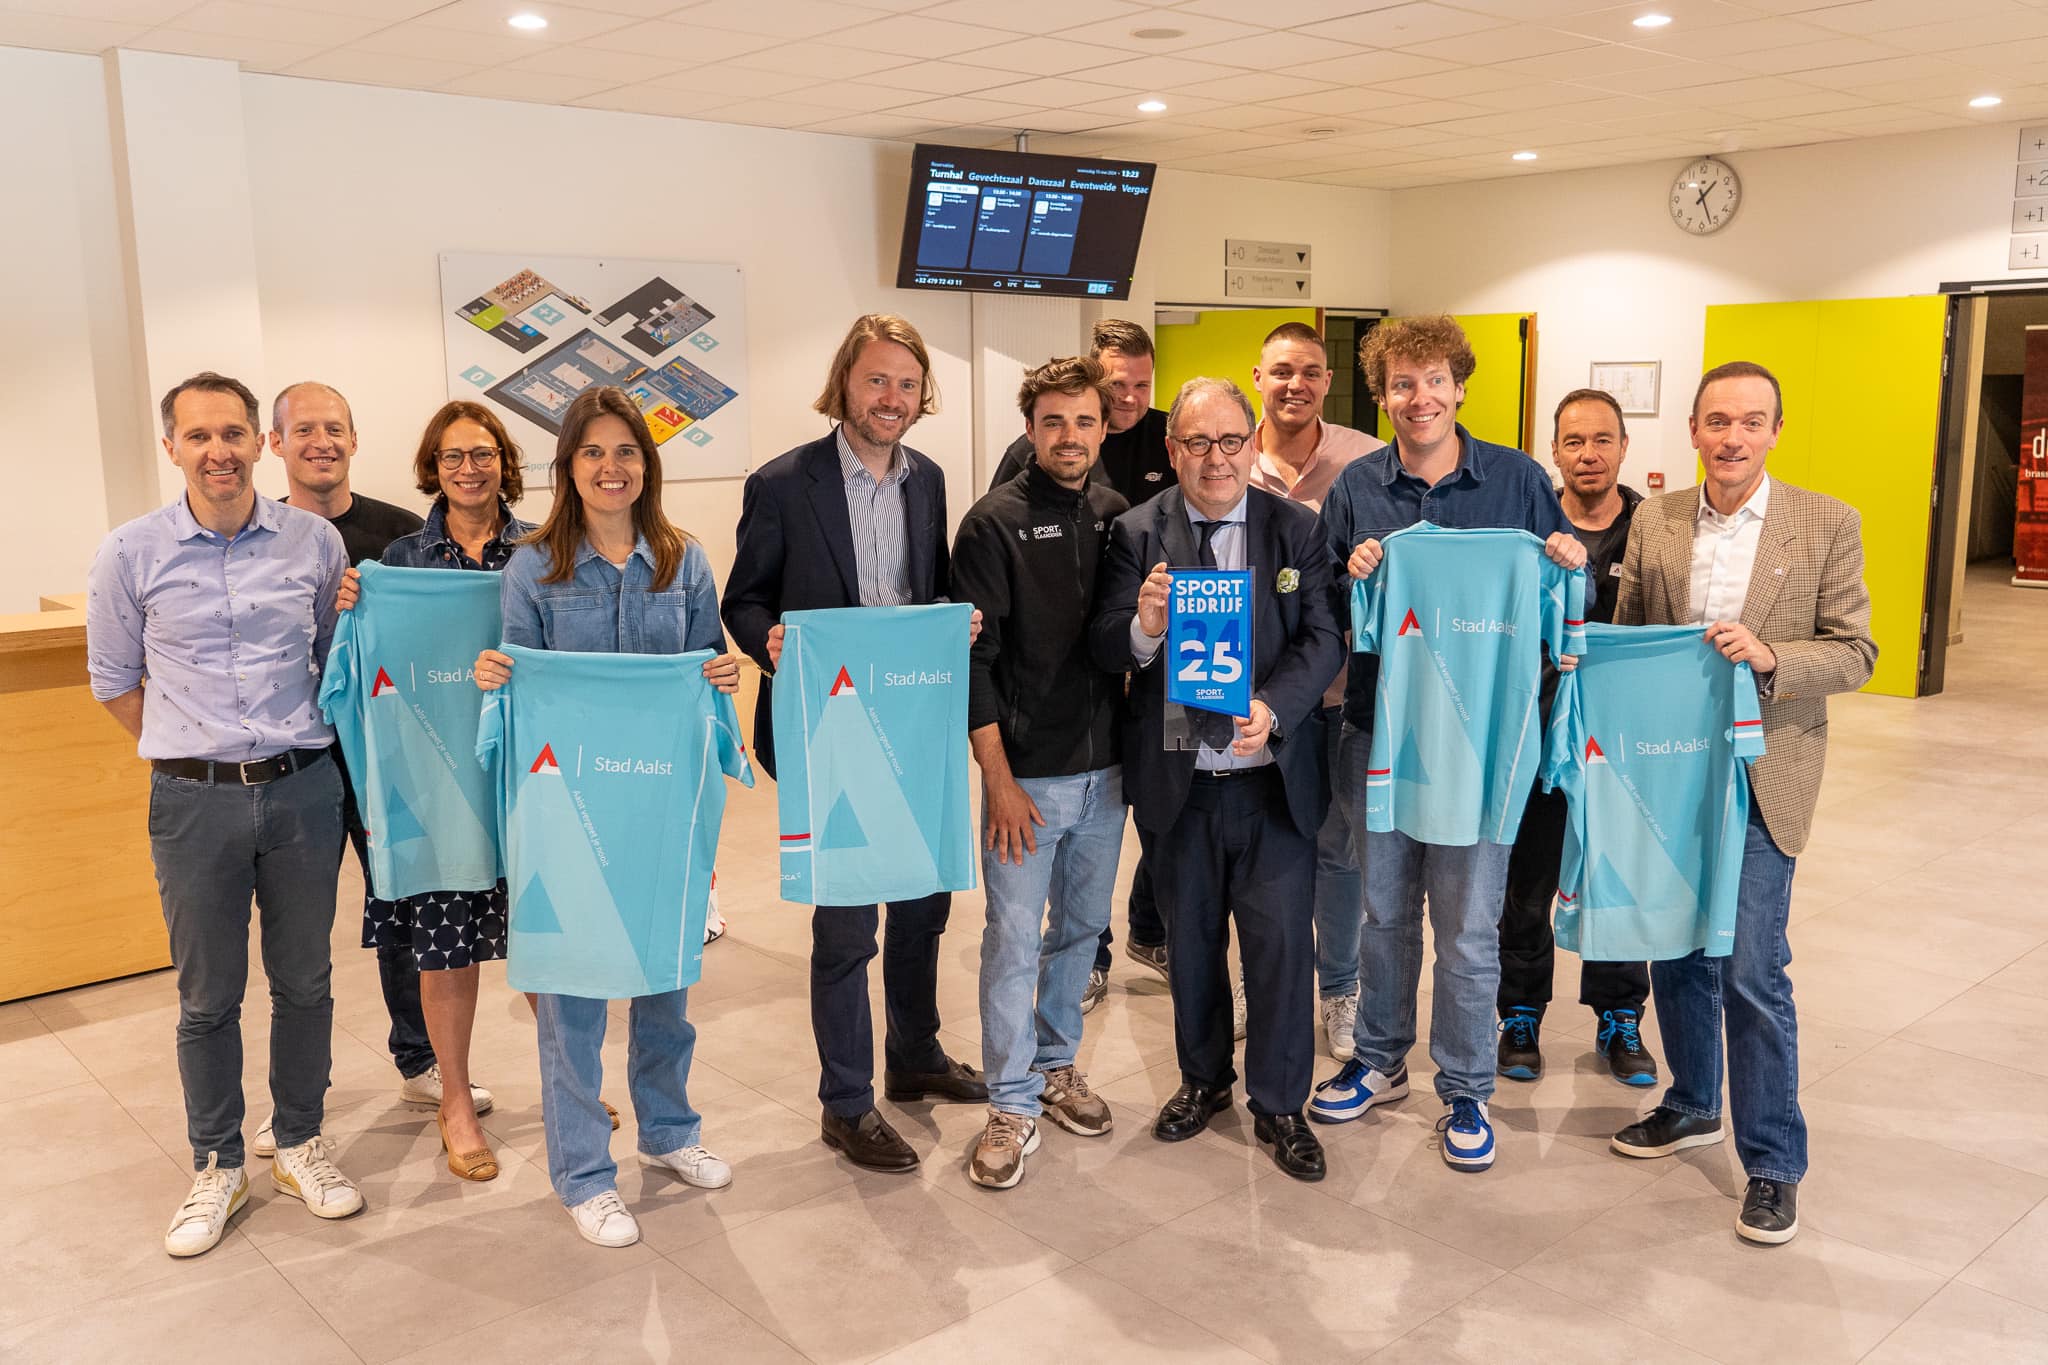 Stad Aalst behaalt label Sportbedrijf: “Dankzij sport op het werk, fietslease en olympische stadsspelen”